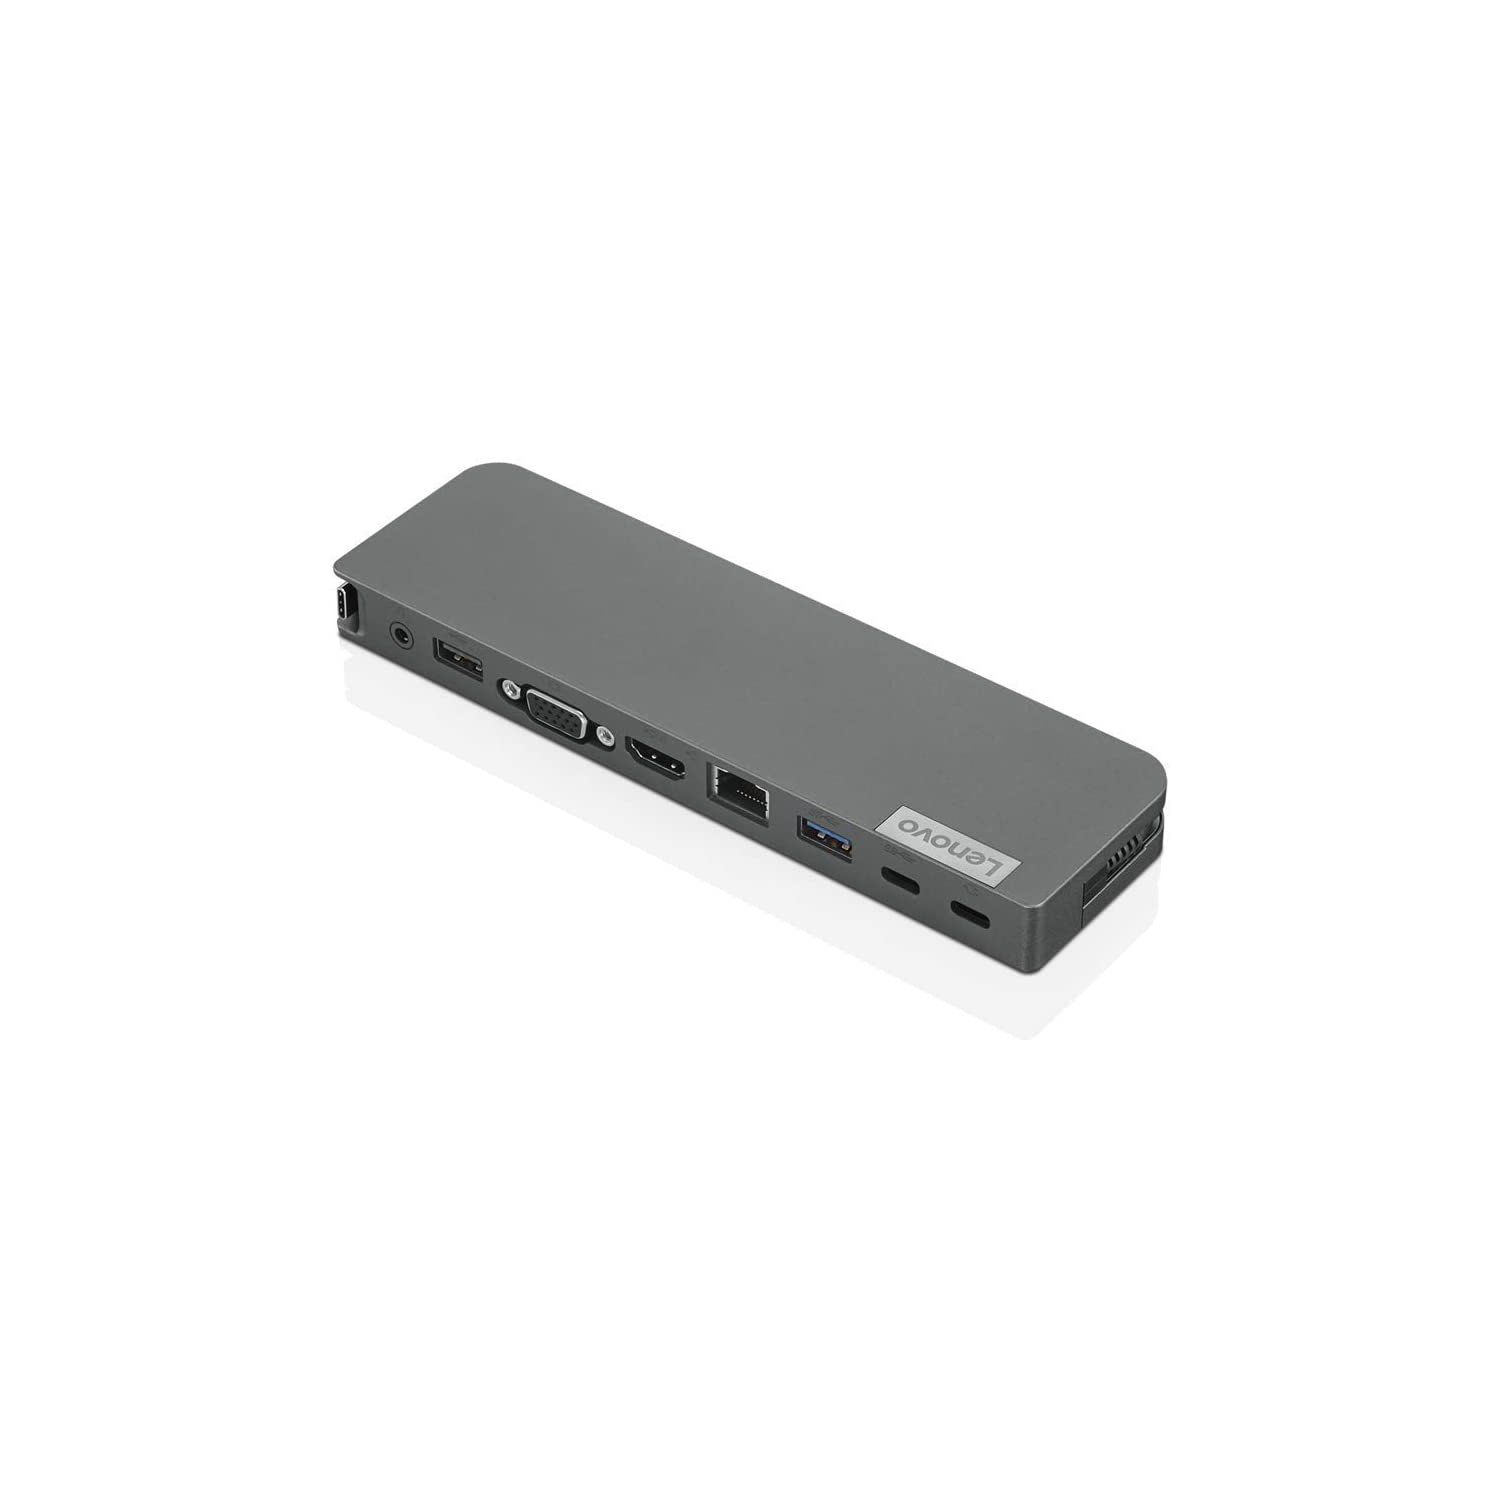 Lenovo USB-C Mini Dock w/ 65W Power Adapter - 1x HDMI 2.0, 1x VGA, 1x USB-C, 1x USB-A 3.1, 1x USB-A 2.0, 1x 3.5mm, 1x Giga LAN, 1x USB-C Charging